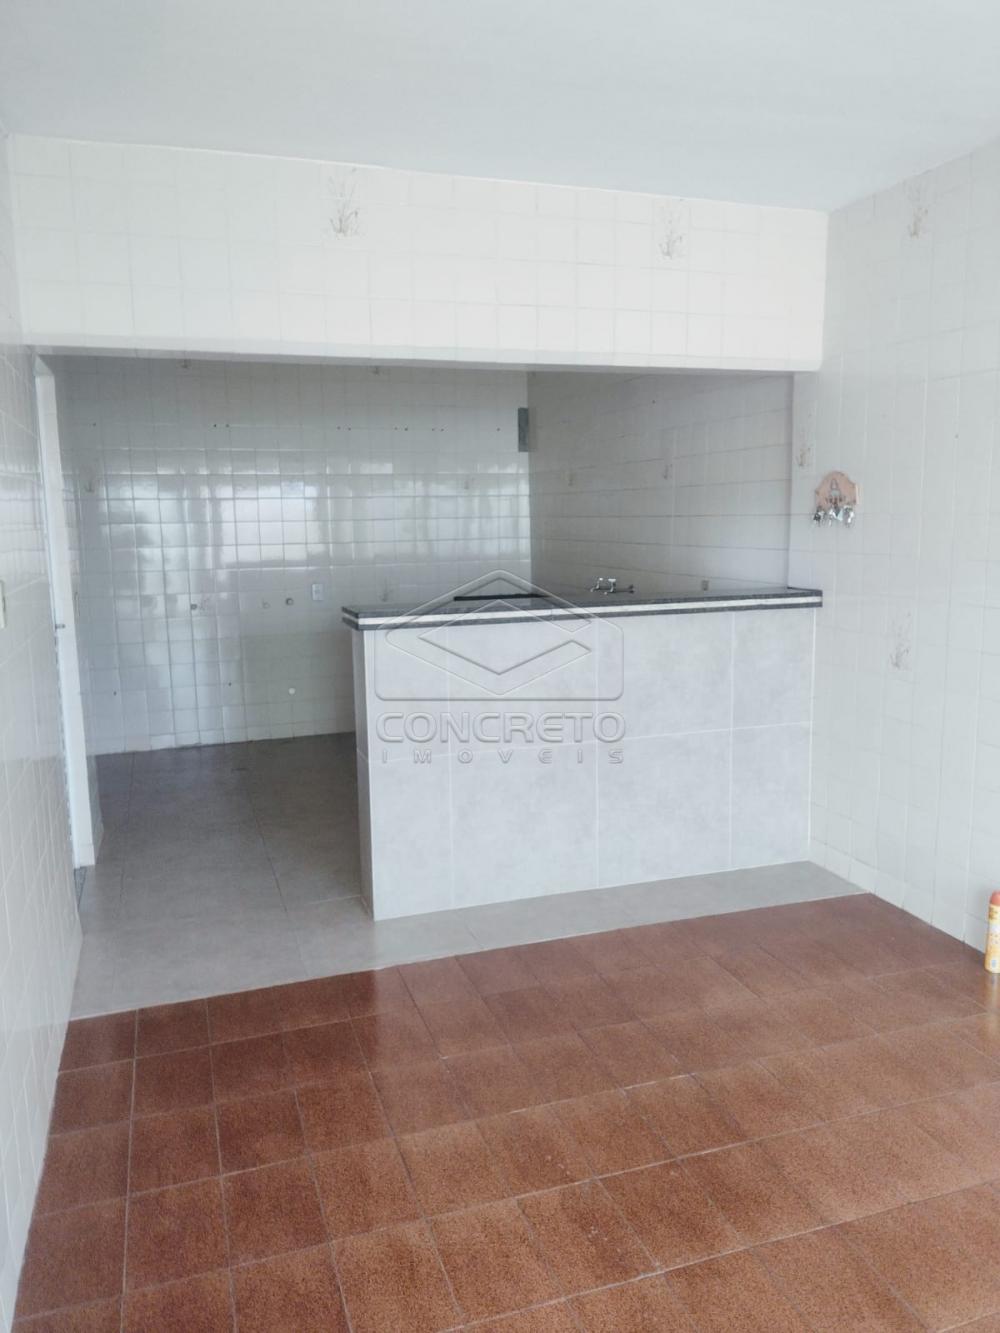 Alugar Casa / Residencia em Bauru R$ 1.000,00 - Foto 8